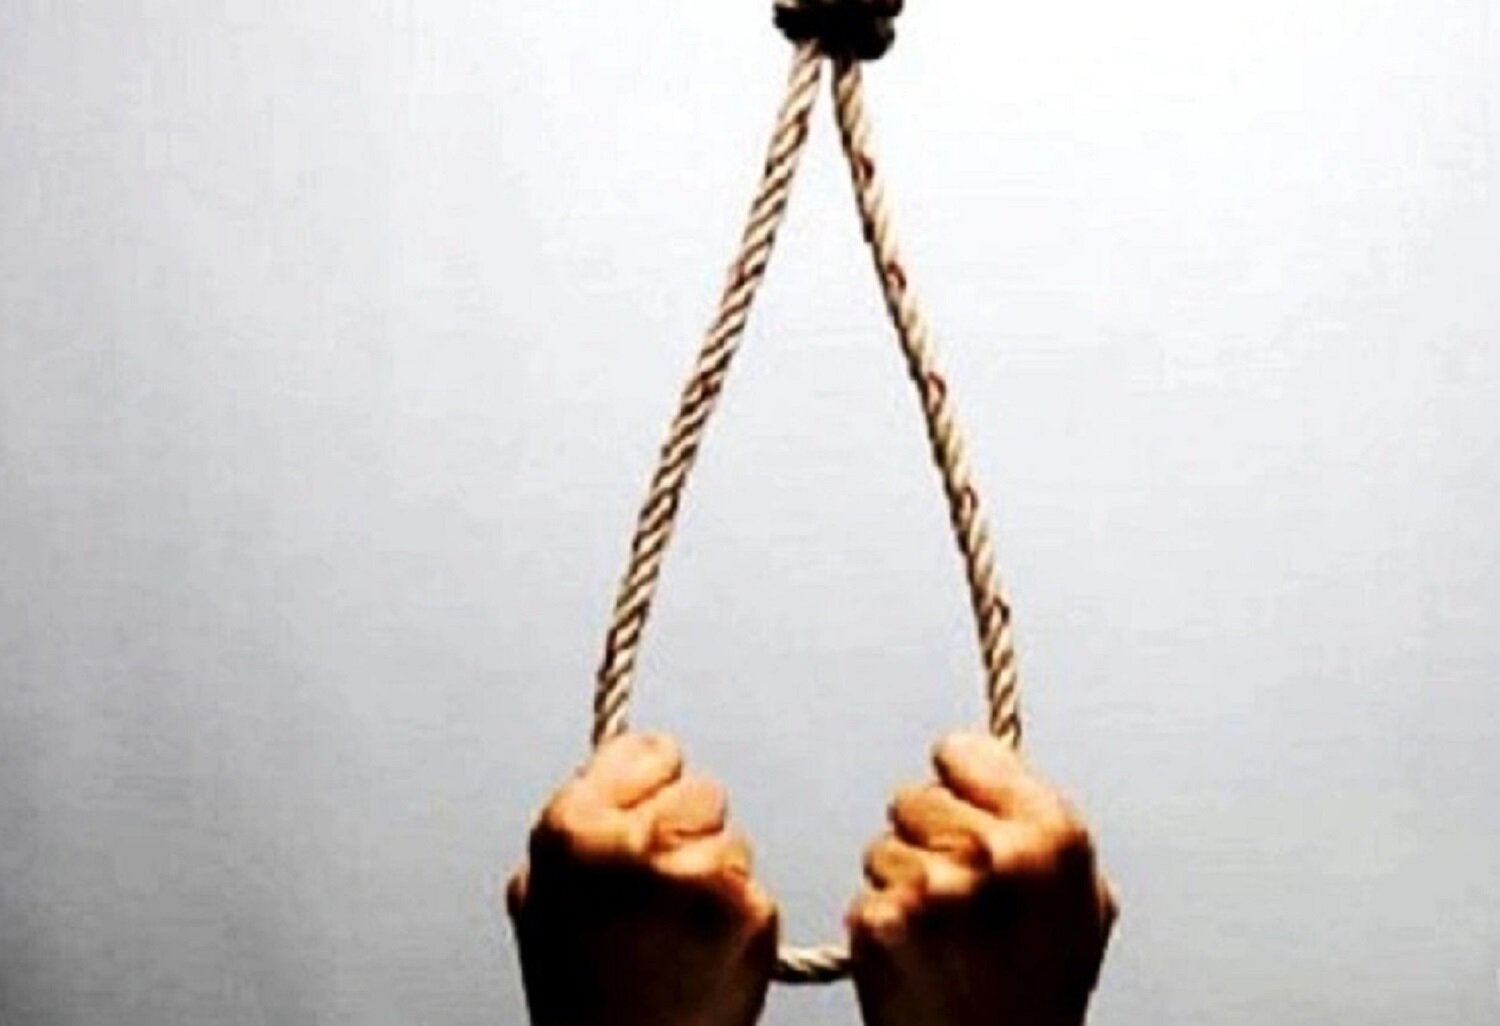 Nghệ An: Nữ sinh 16 tuổi nghi tự tử tại nhà riêng - 1